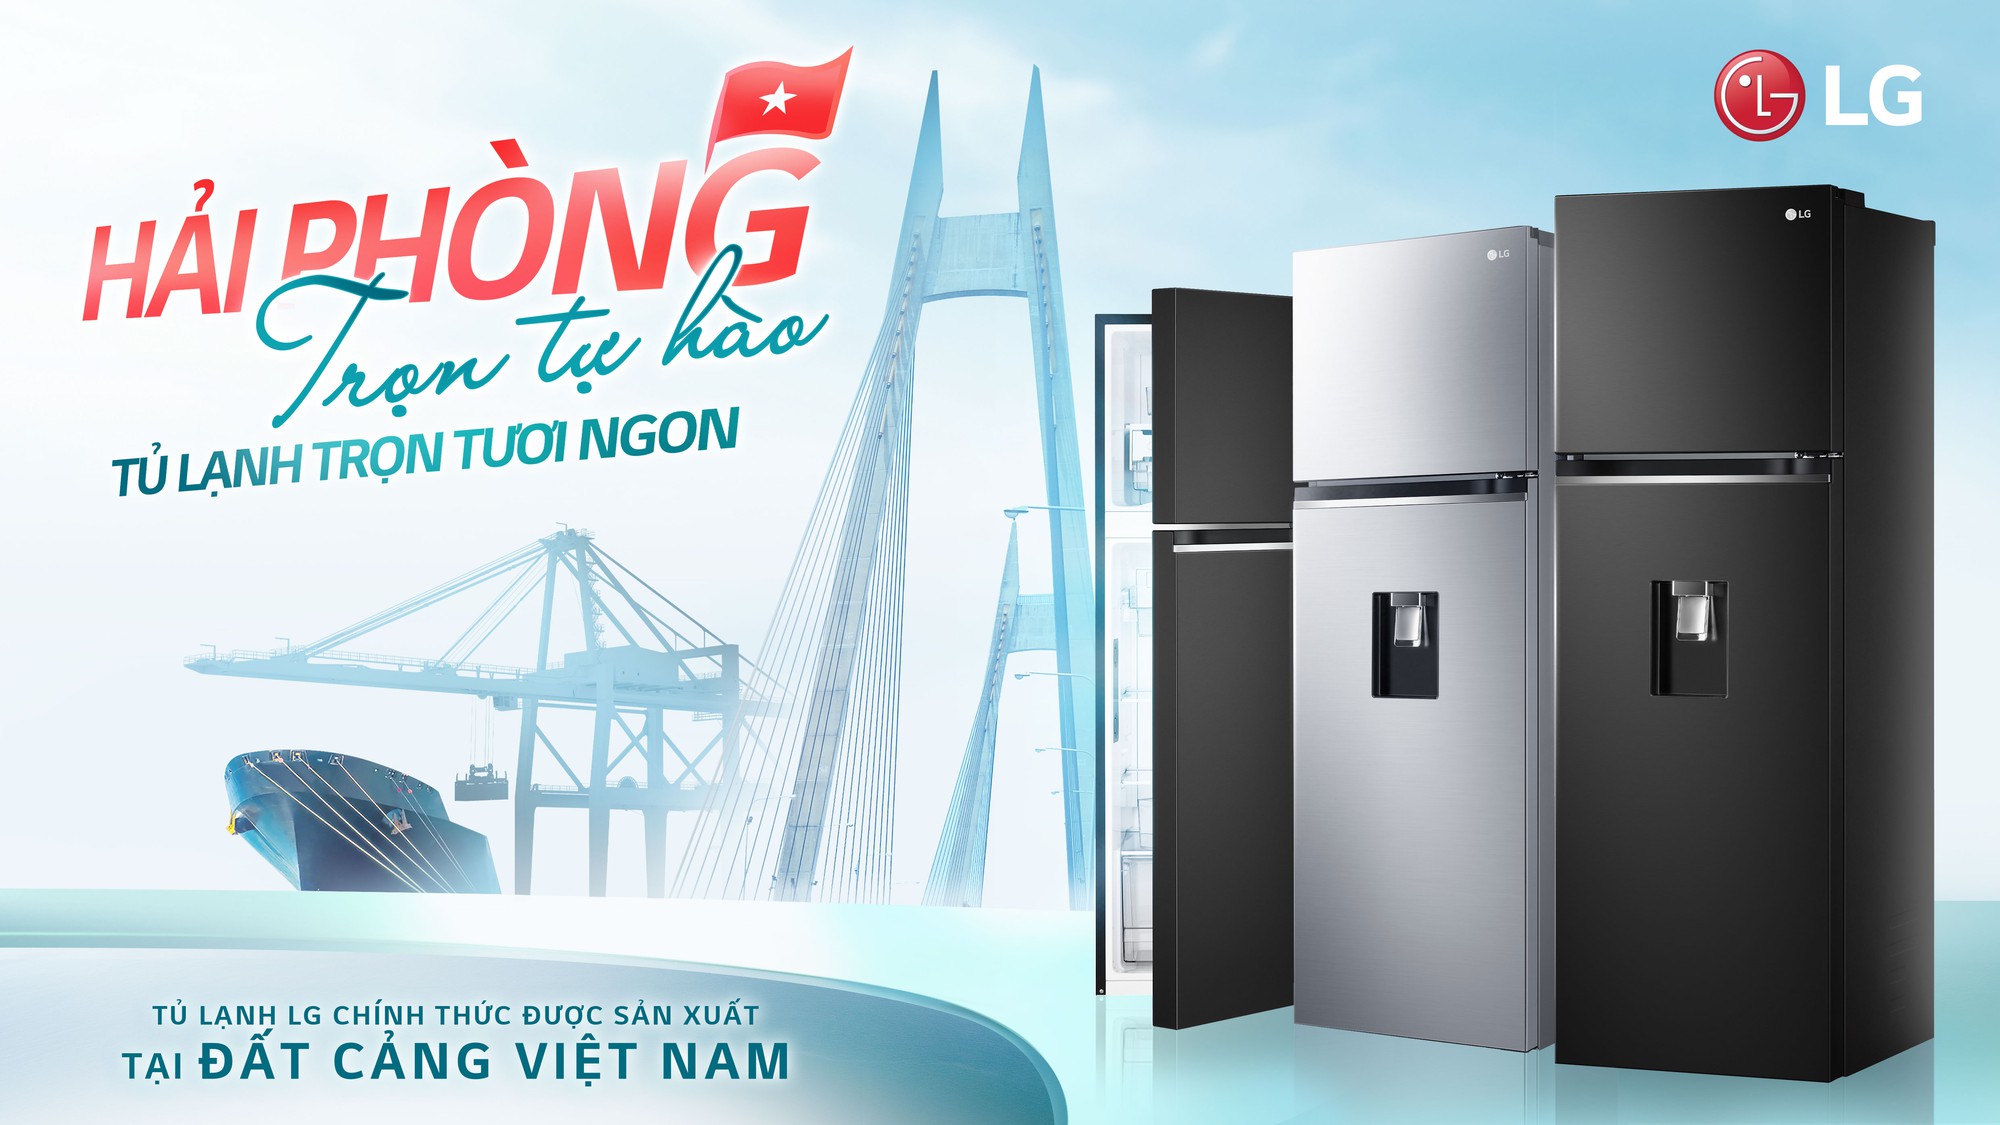 Khi các sản phẩm gia dụng đẳng cấp quốc tế được sản xuất tại Việt Nam - Ảnh 6.